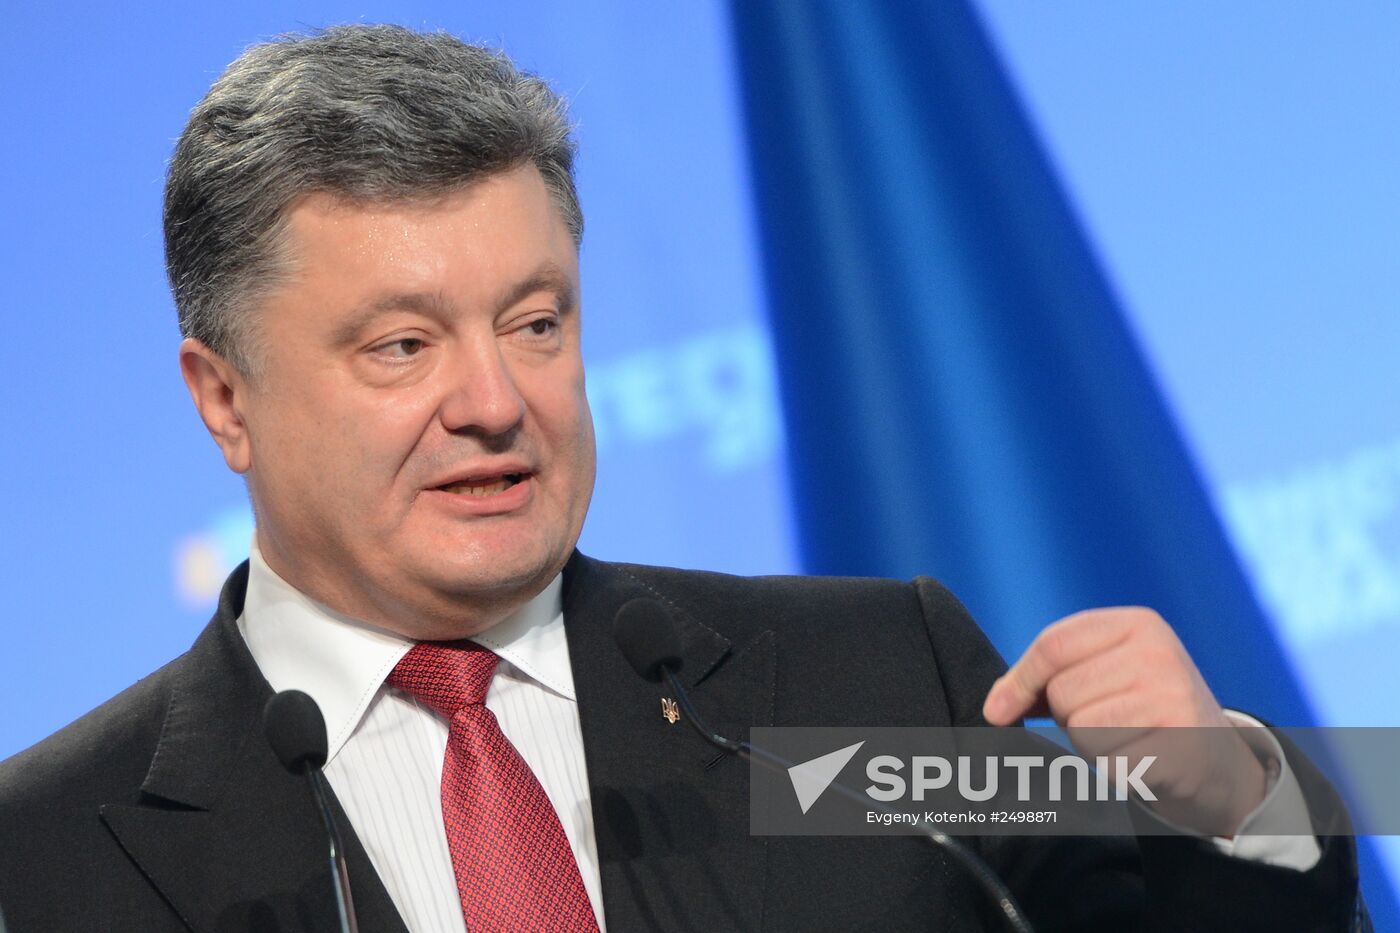 News conference with Ukrainian President Petro Poroshenko in Kiev